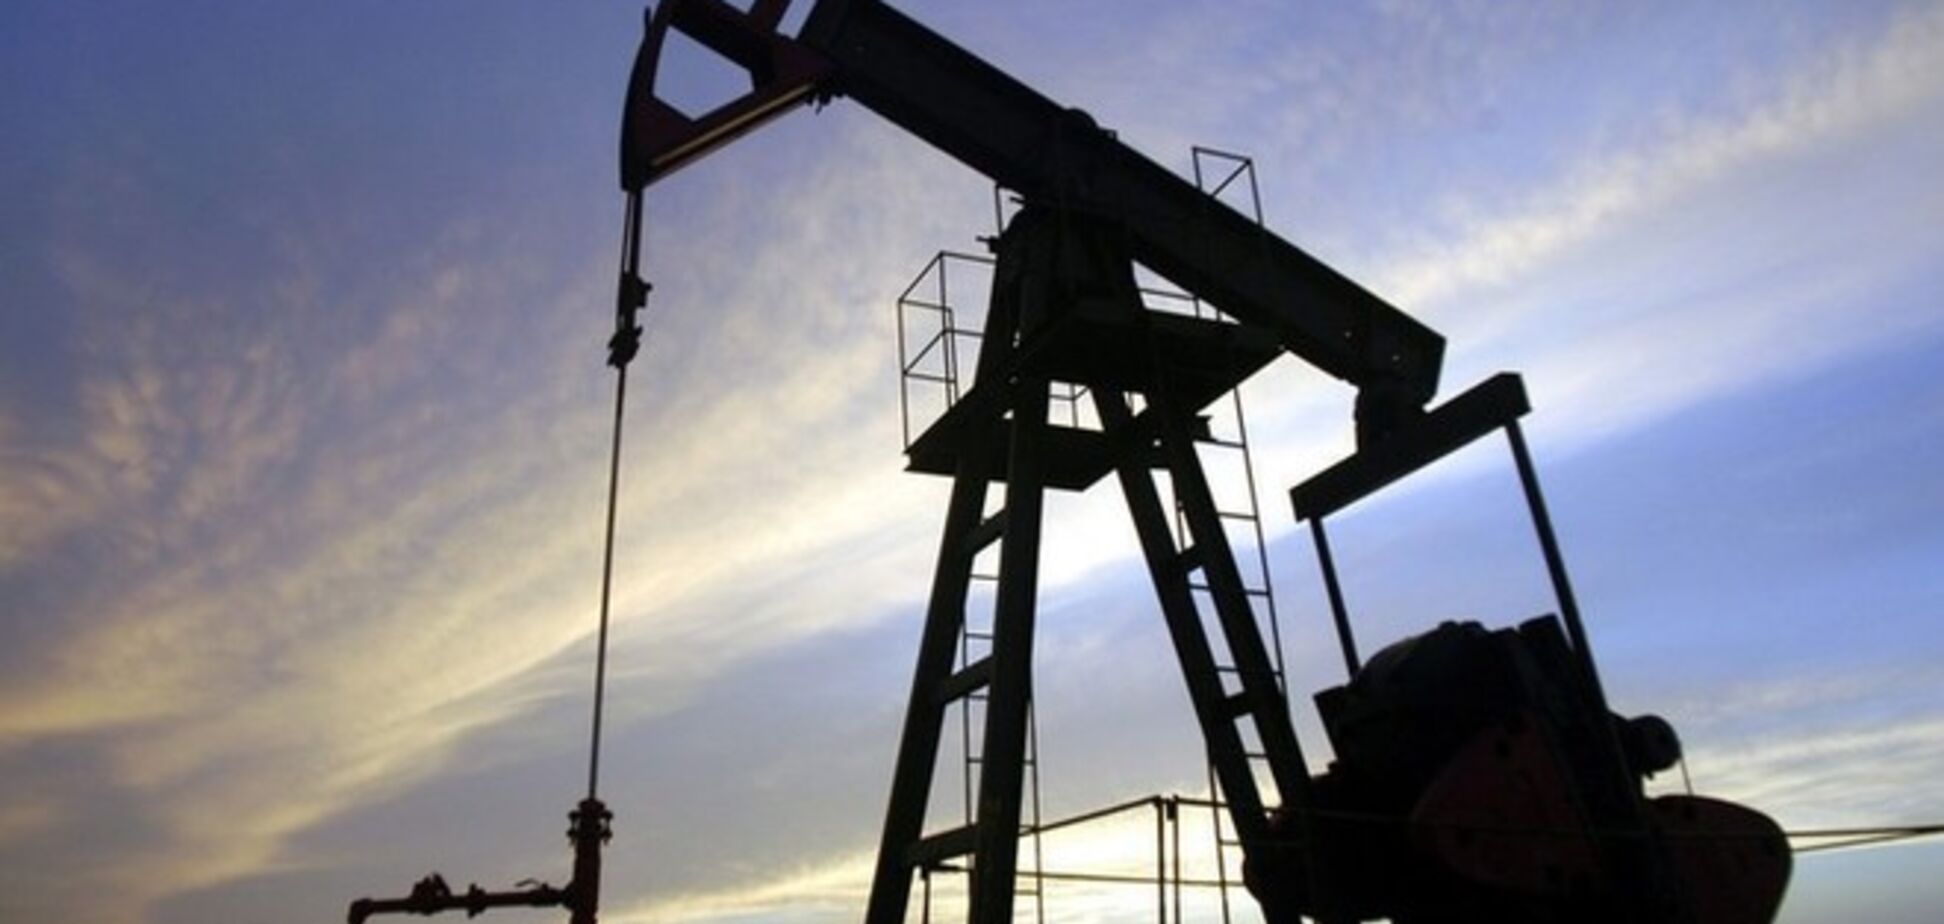 Ціна на нафту марки Brent впала до нового мінімуму - $ 85,04 за барель